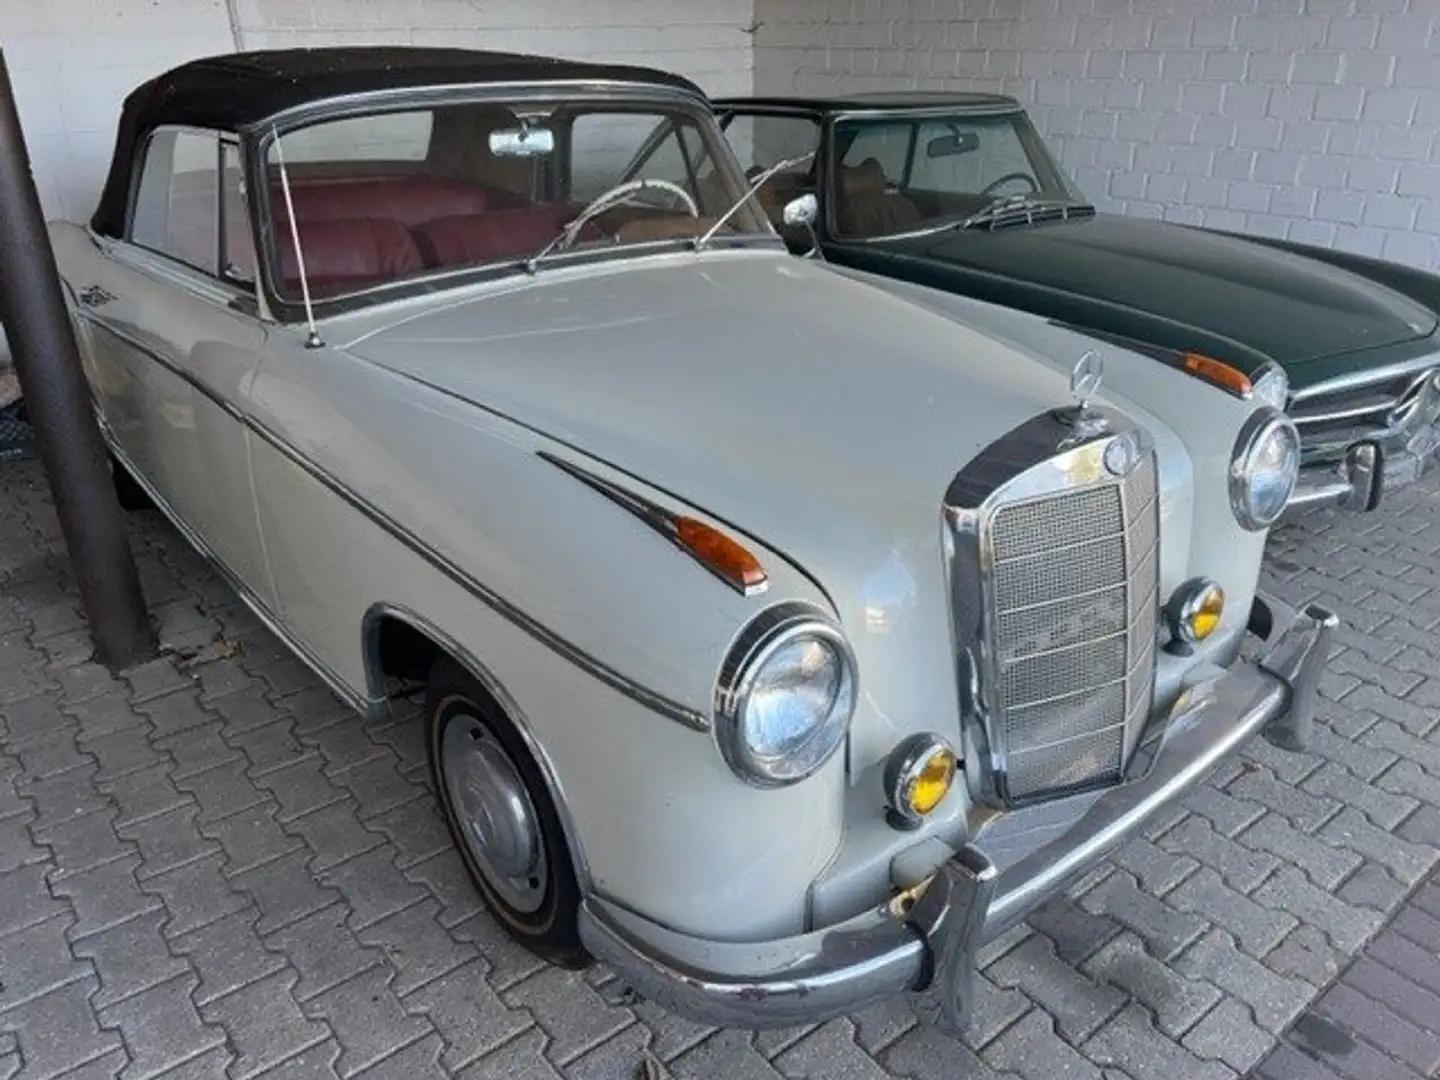 Mercedes-Benz 220 Cabrio in Weiß oldtimer in Oberndorf Kitzbühel für € 69  900,-